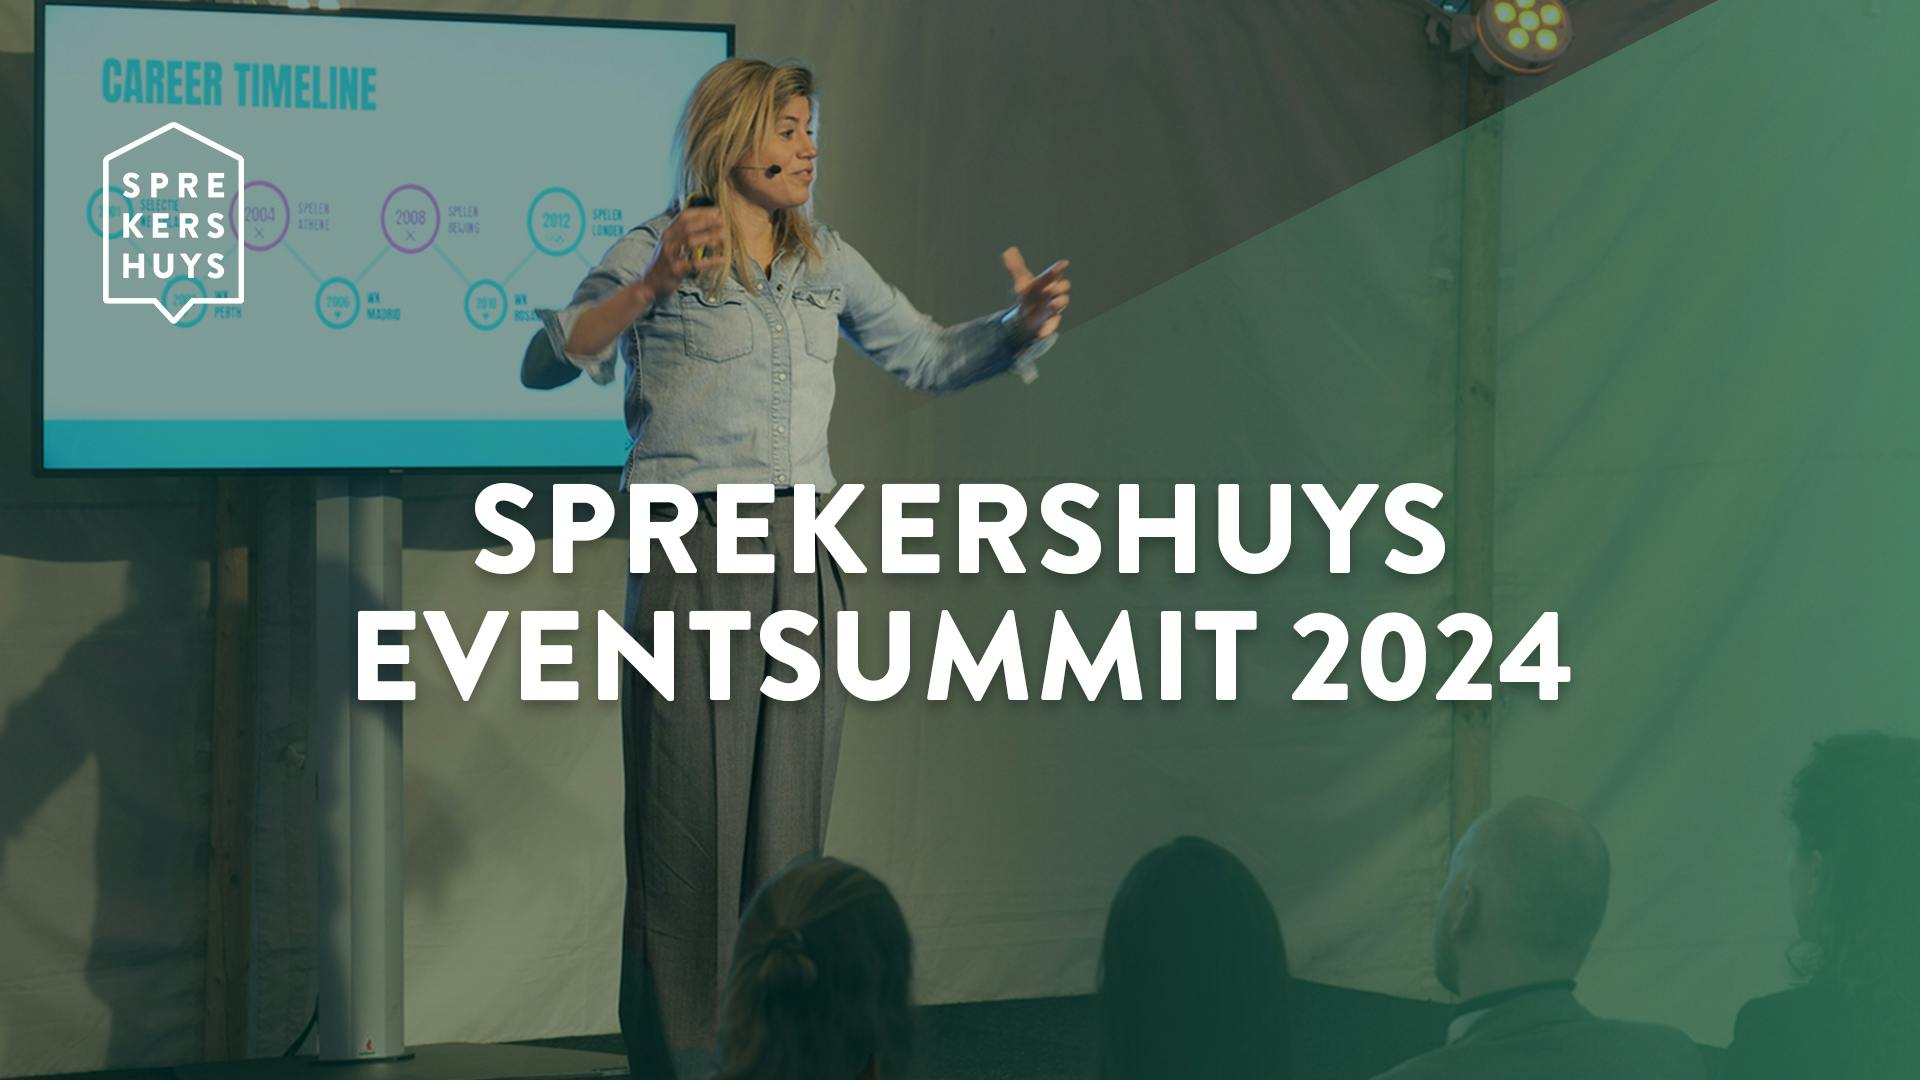 Kim Lammers aan het spreken bewegend met handen met groene gloed over zich en tekst 'Sprekershuys Eventsummit 2024'